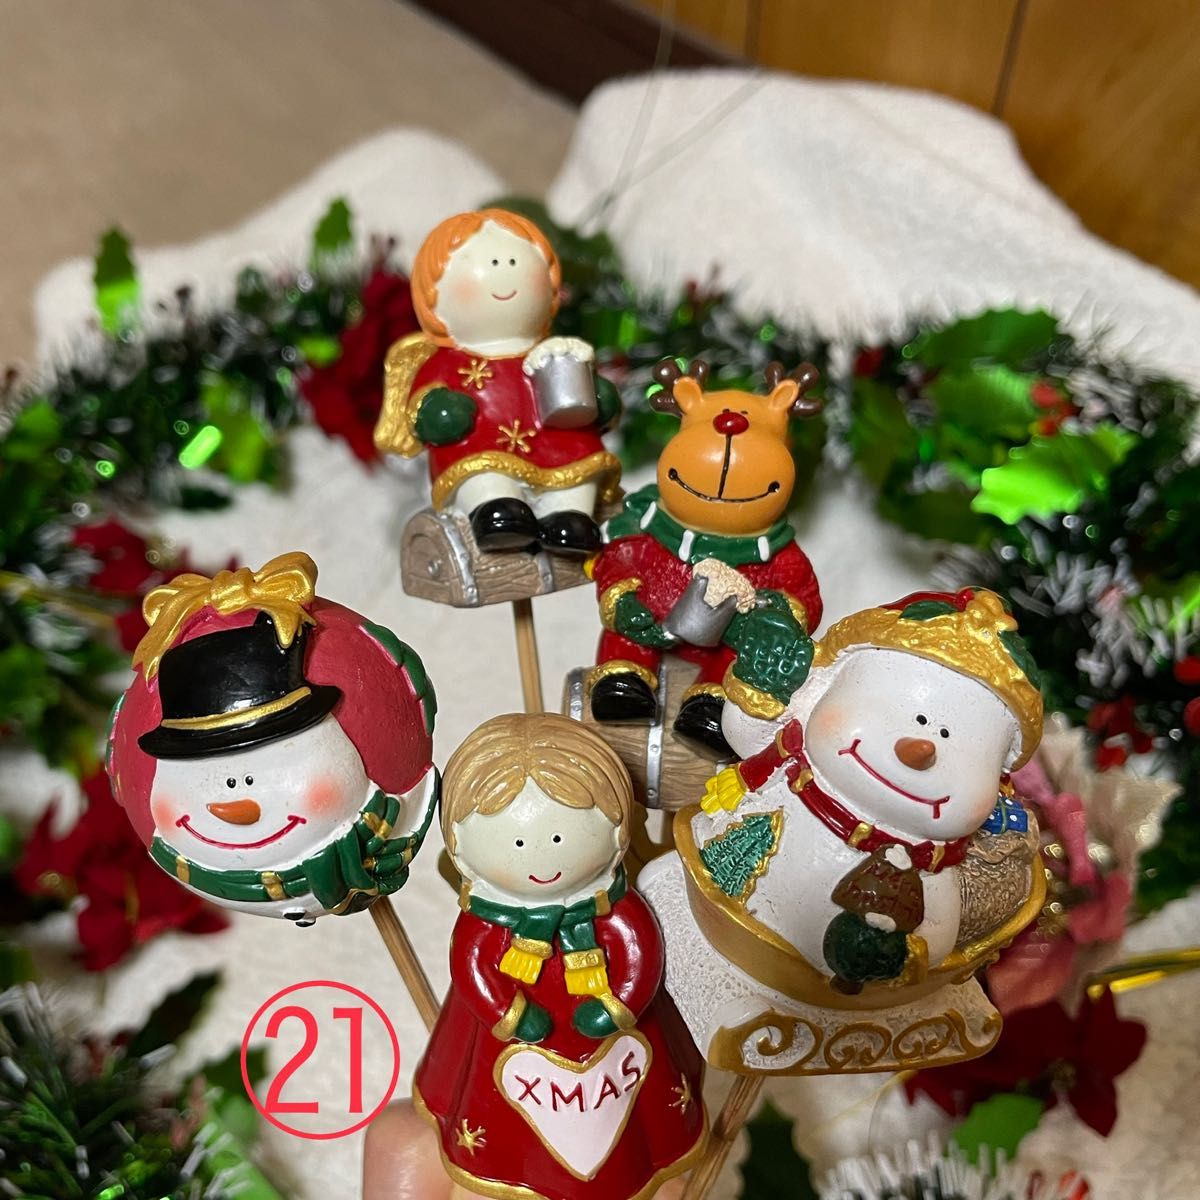 21 クリスマスピック ガーデンピック オブジェ 置き物 サンタ トナカイ 飾り ツリー  スノーマン オーナメント グッズ 雑貨